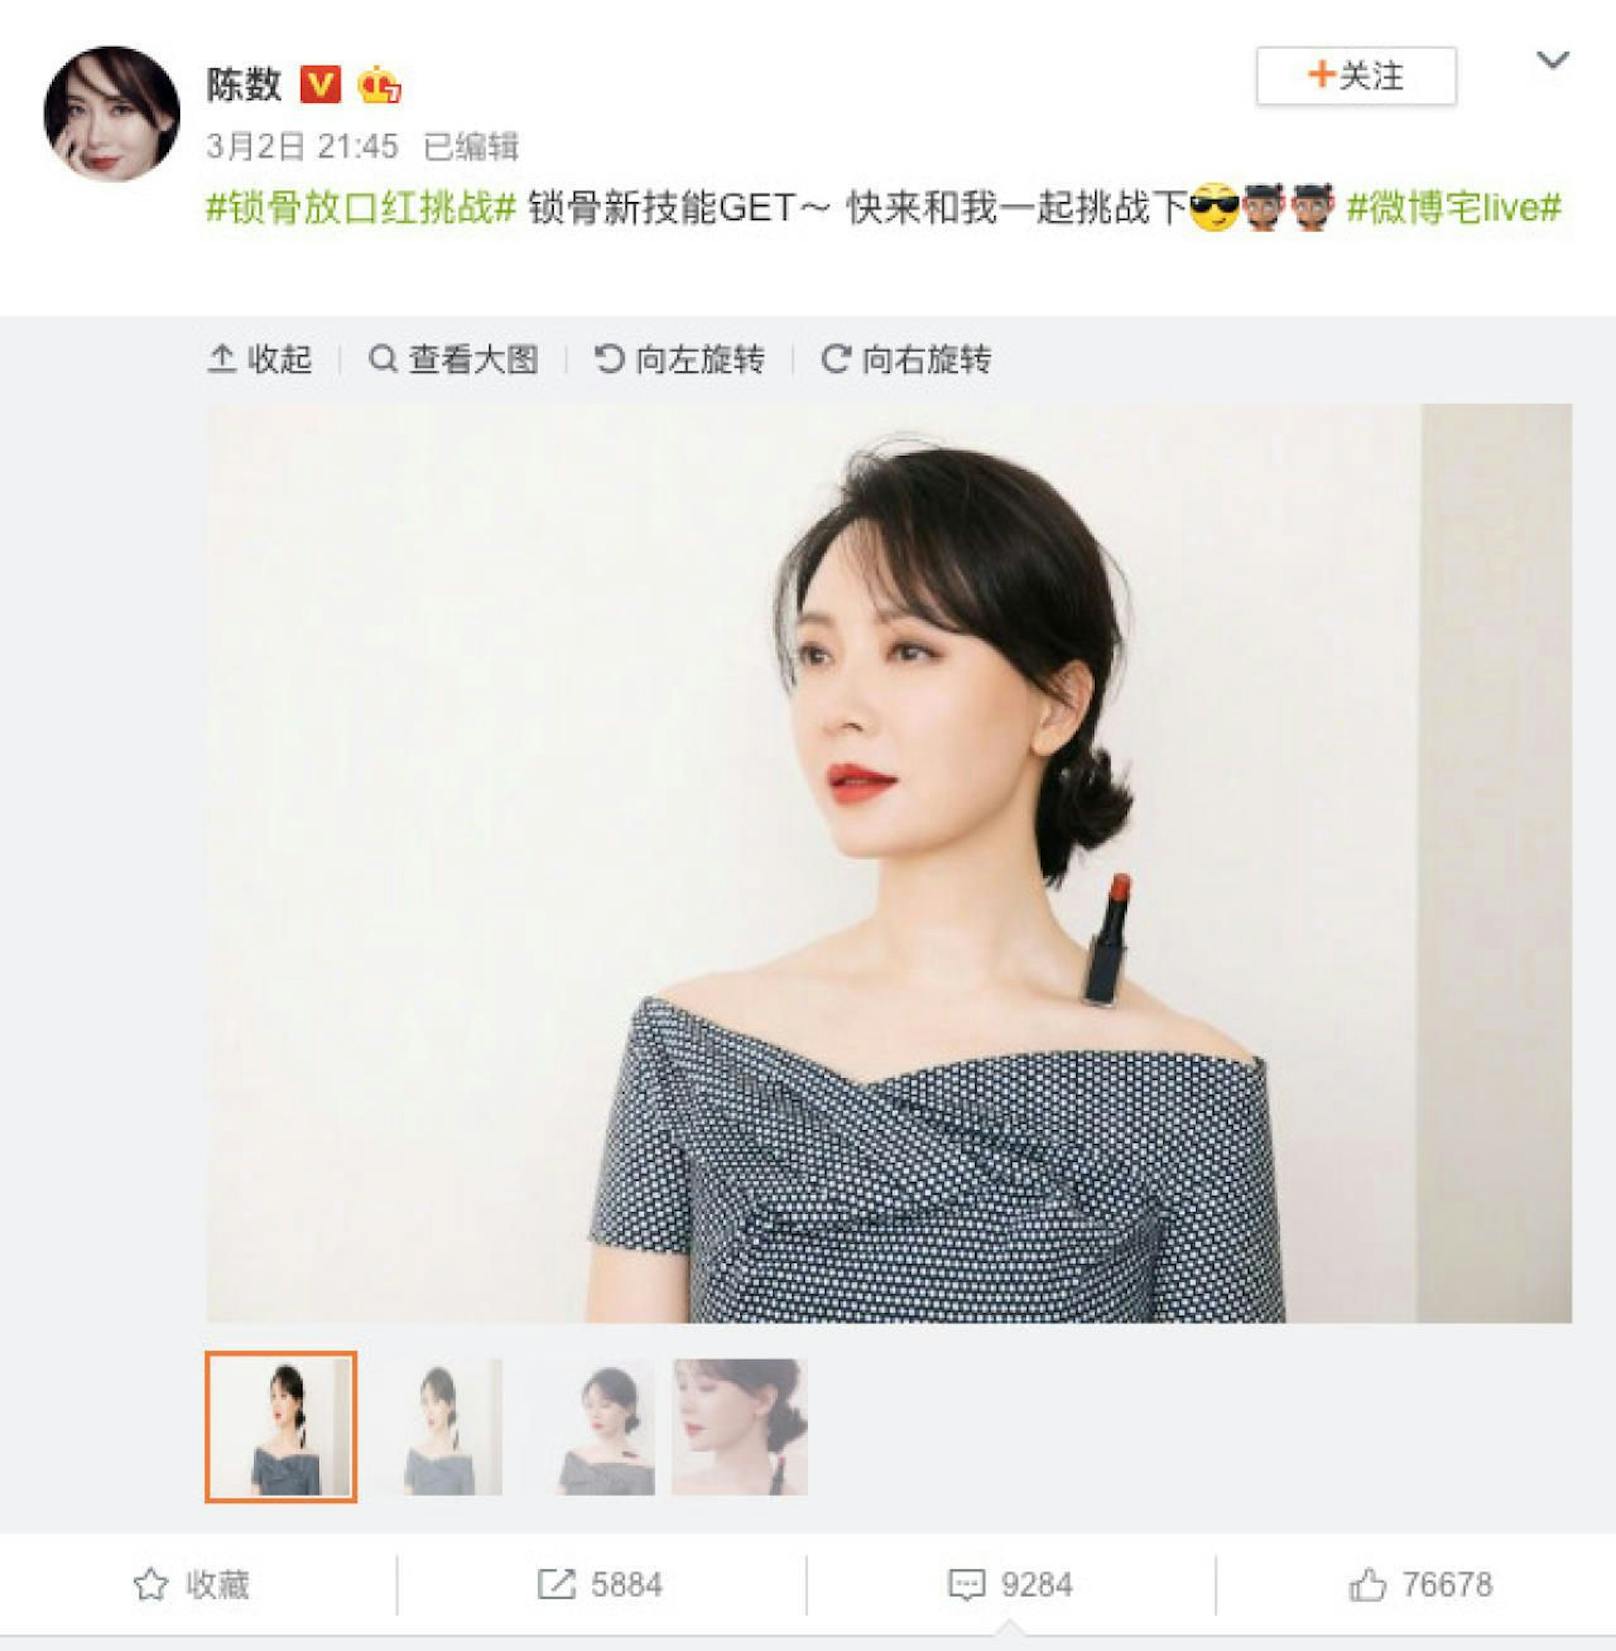 Schauspielerin Chen Su startete die &quot;Lipstick Challenge&quot; auf Weibo.